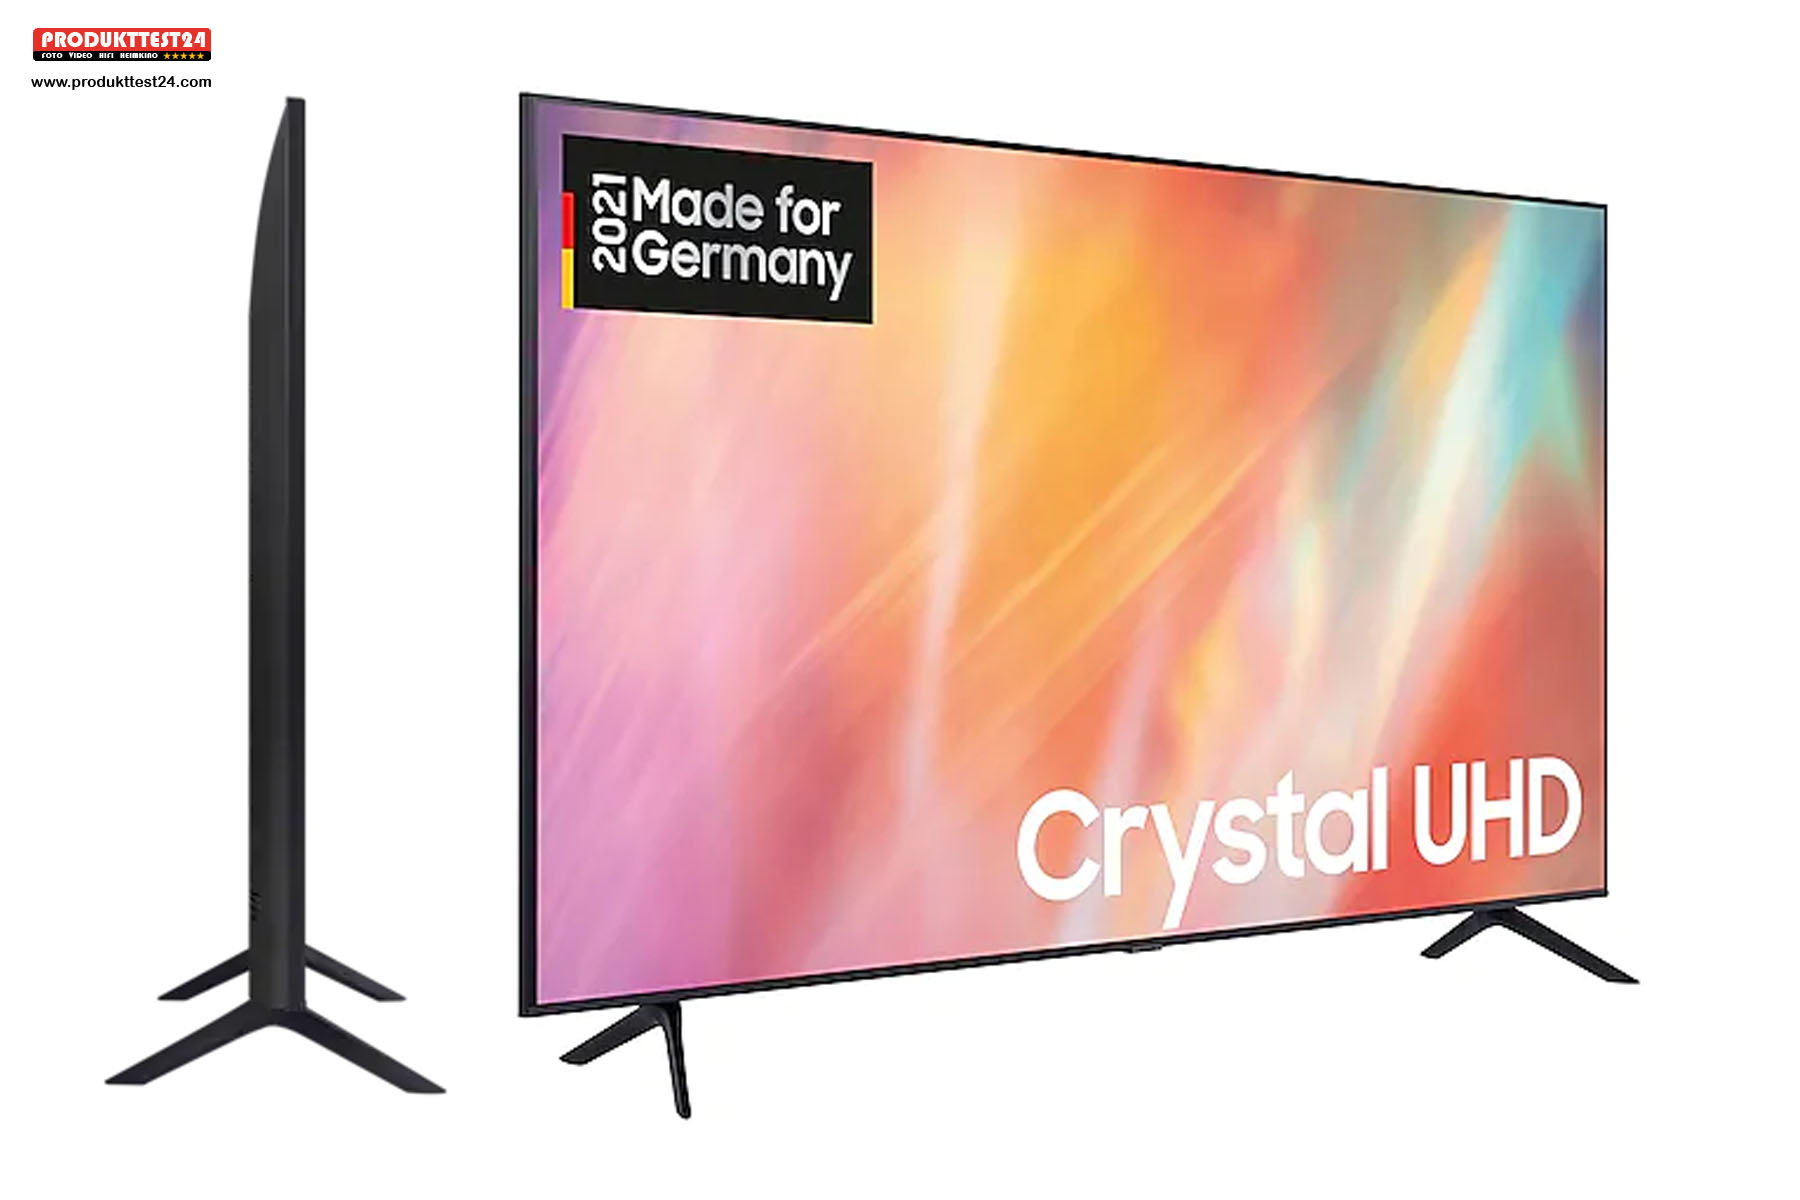 Samsung GU587179 Crystal UHD 4K-Fernseher